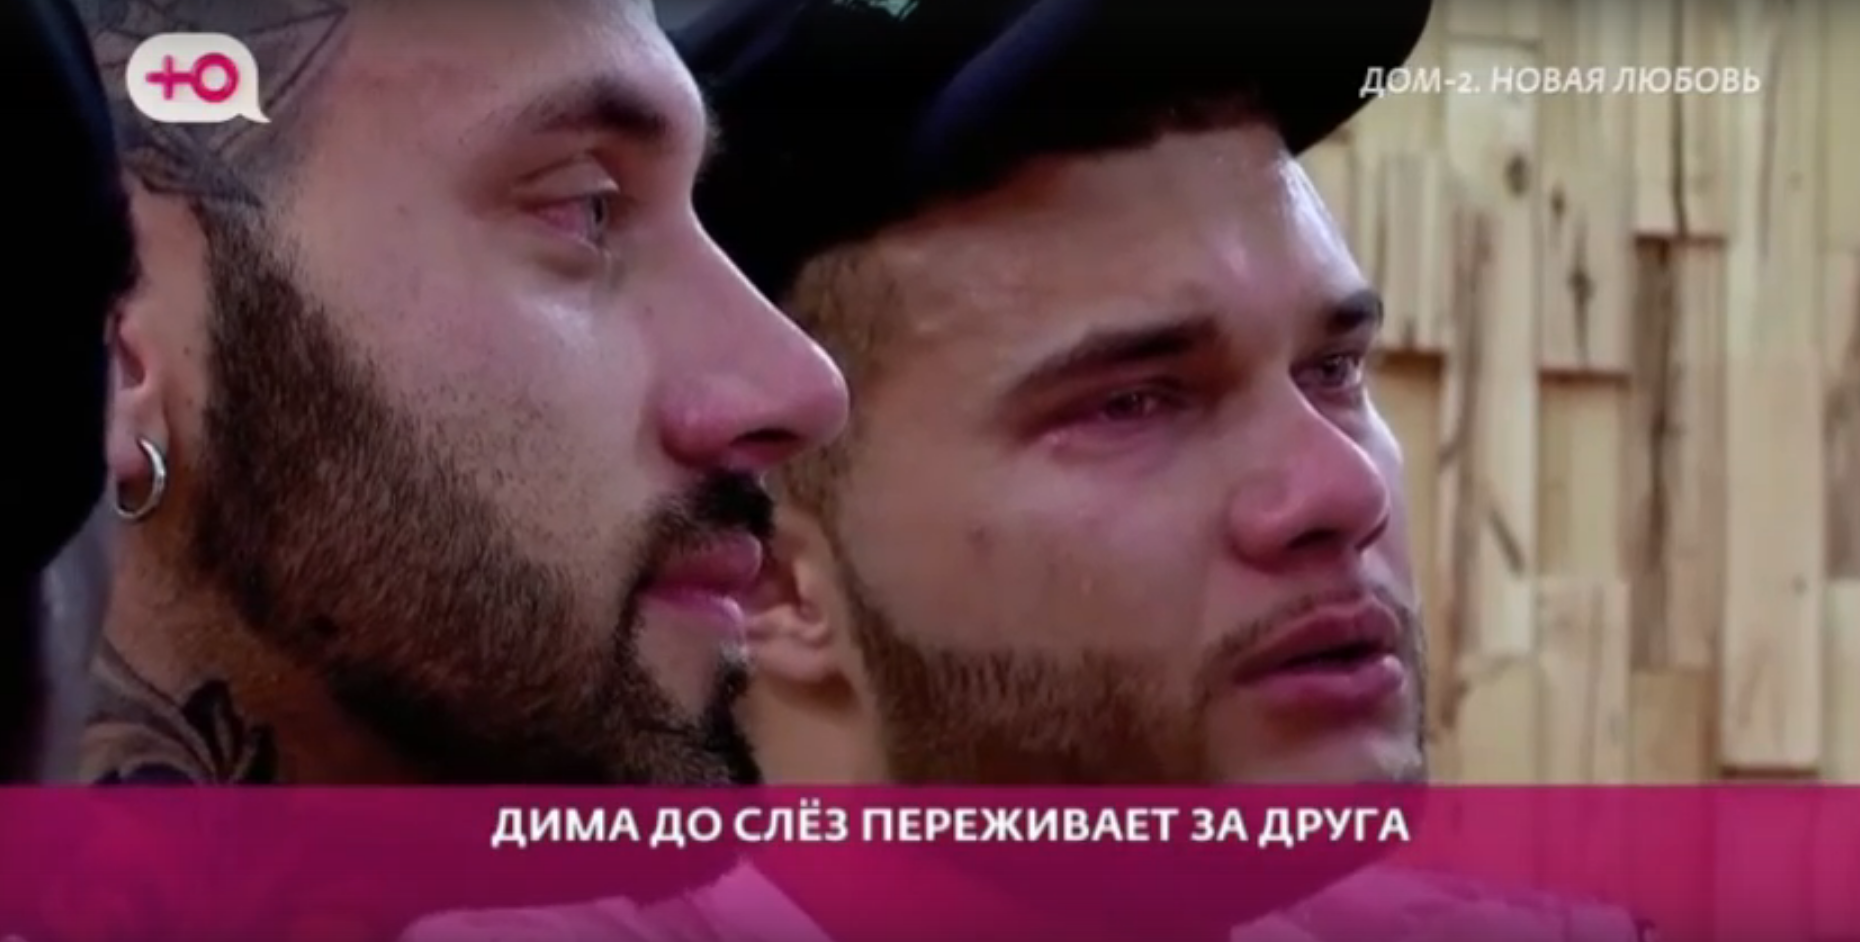 Дмитрий Васильев расплакался, извиняясь перед Артёмом Грантом